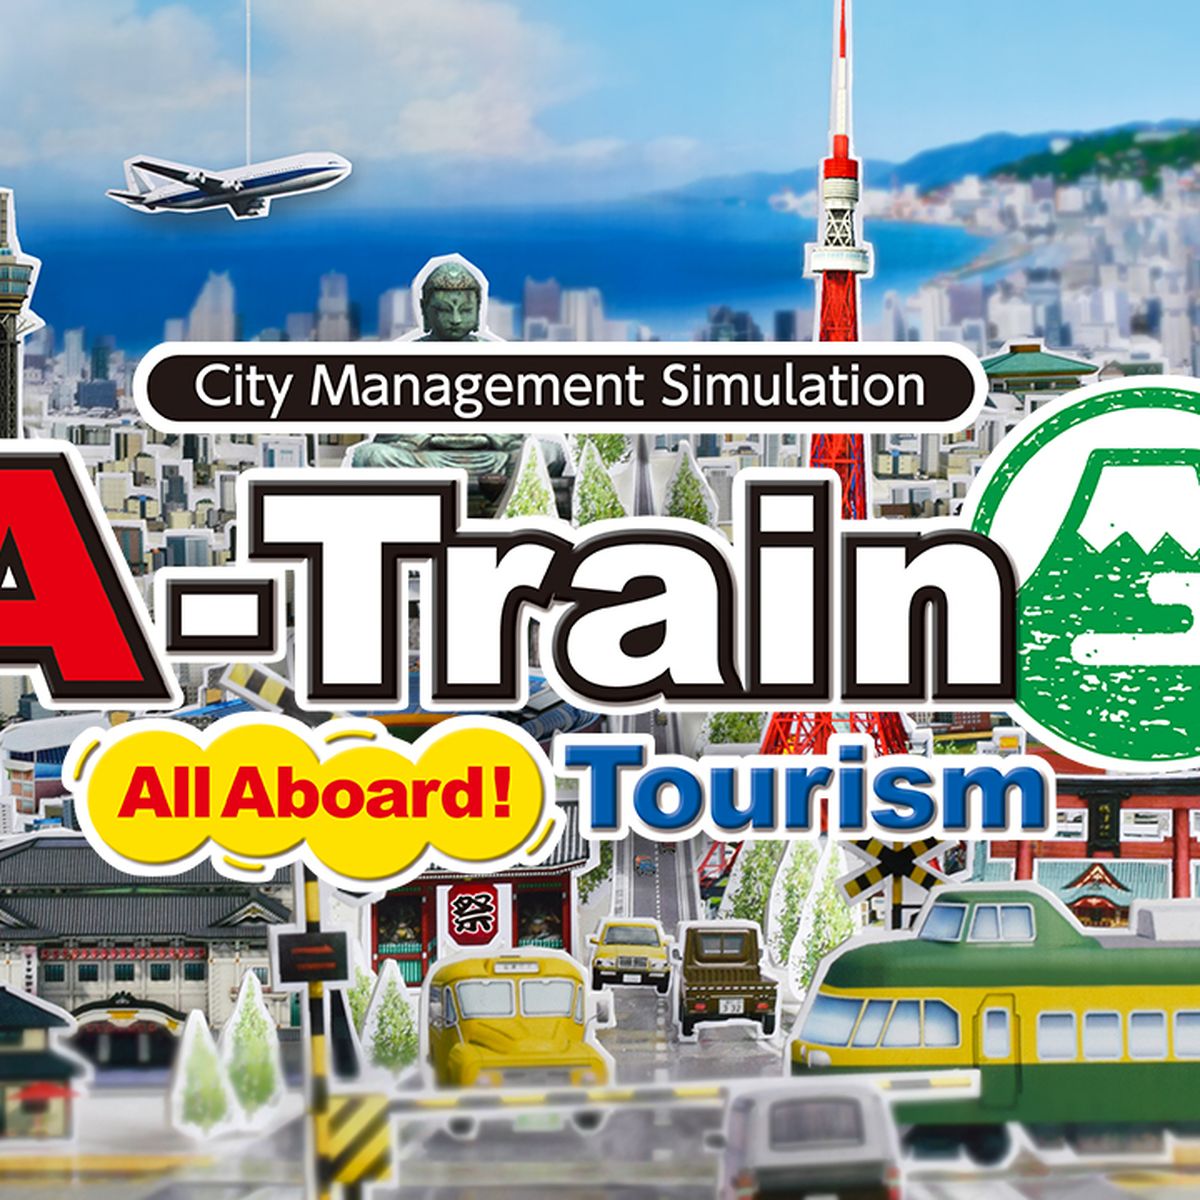 Nintendo Switch recibe Consolas Hobby de Tourism, red ya ferroviaria, gestión juego A-Train | de una Aboard All disponible demo